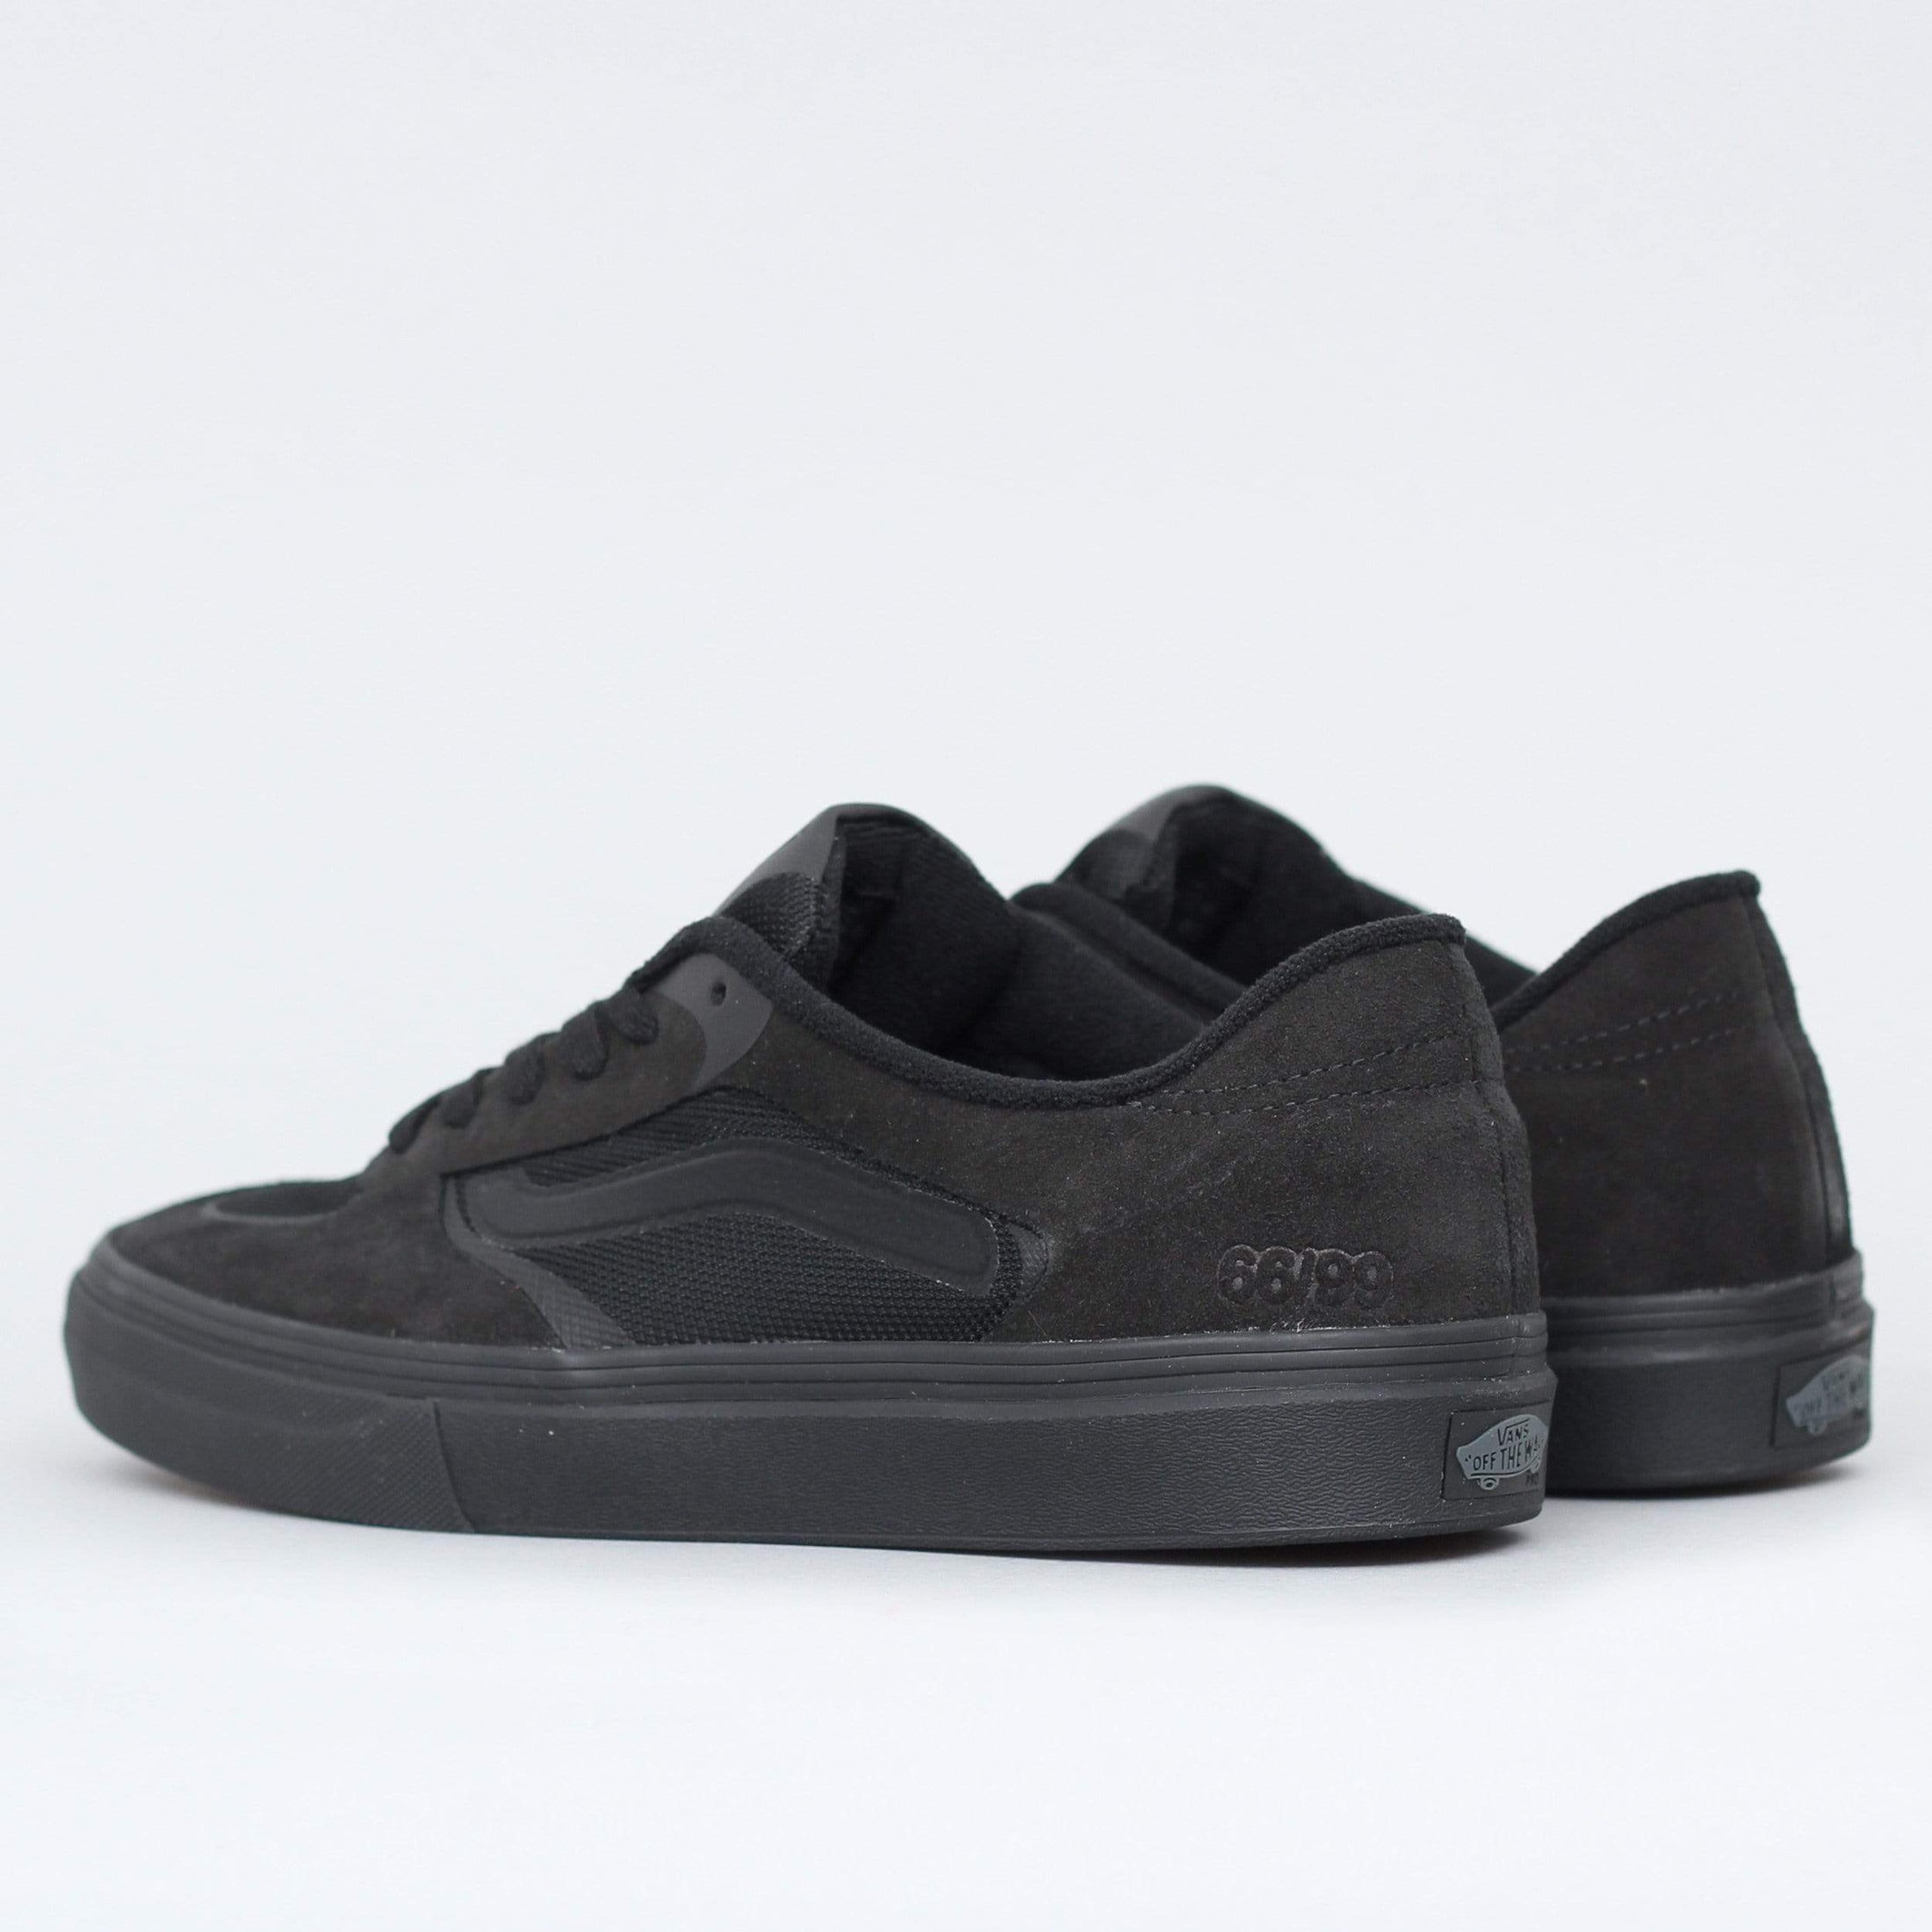 Vans Rowley Rapidweld Shoes Black / Black